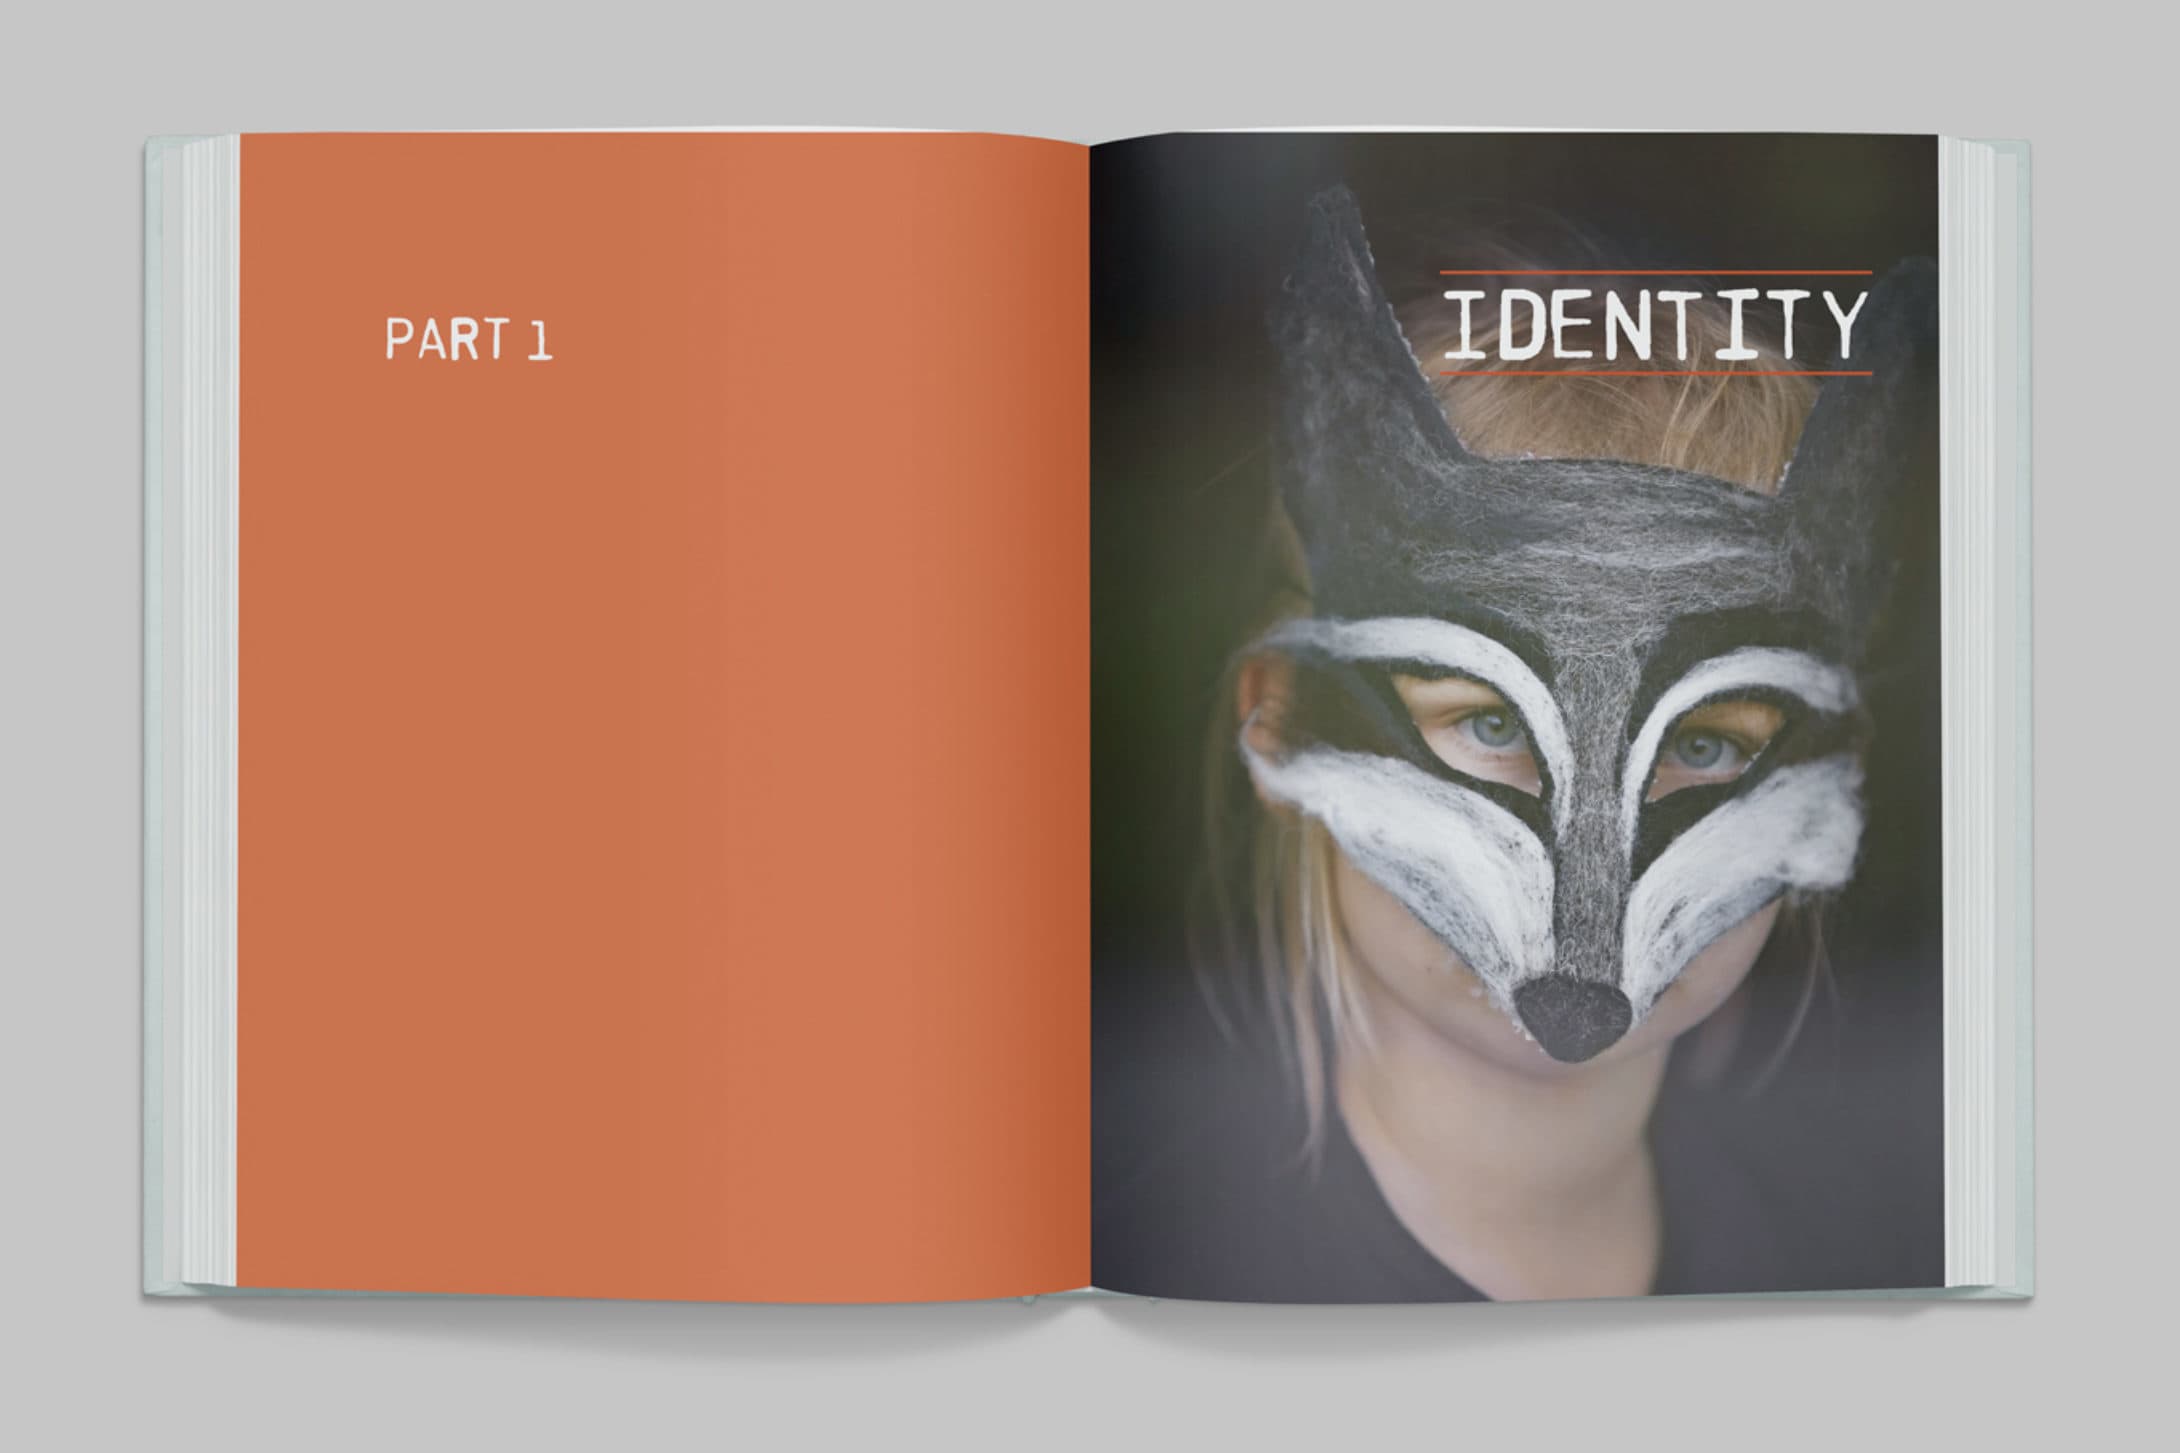 Bildet viser et oppslag i boken Echo. Venstre side er helt oransje, med teksten "Part 1", mens på høyre side er det et bilde av et barn med revemaske og teksten "identity".